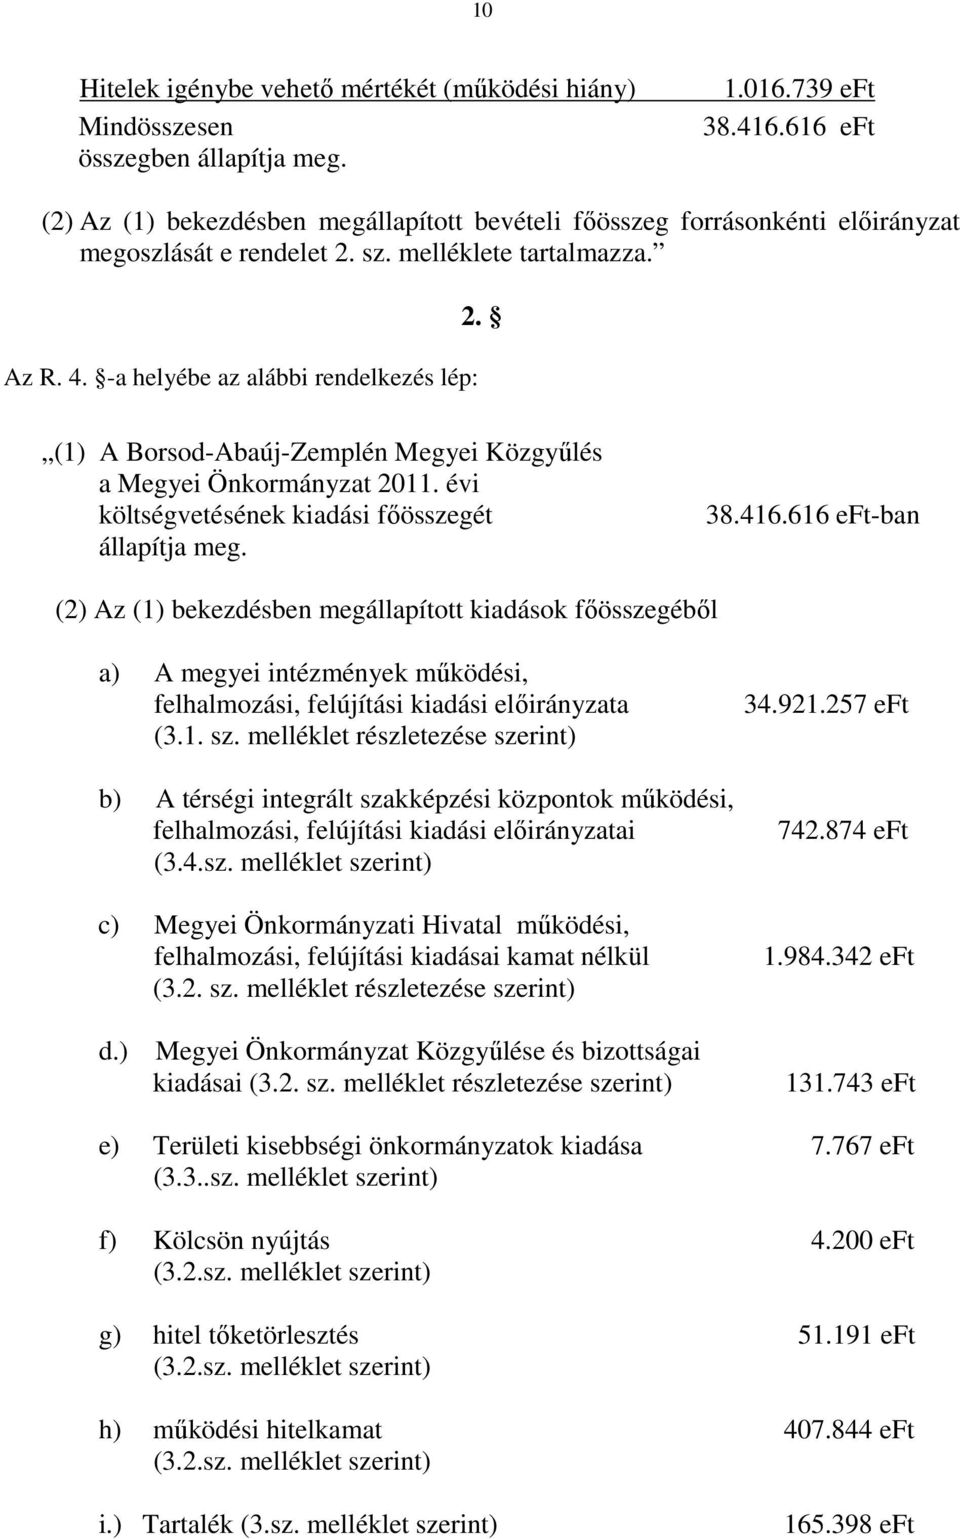 (1) A Borsod-Abaúj-Zemplén Megyei Közgyűlés a Megyei Önkormányzat 2011. évi költségvetésének kiadási főösszegét állapítja meg. 38.416.